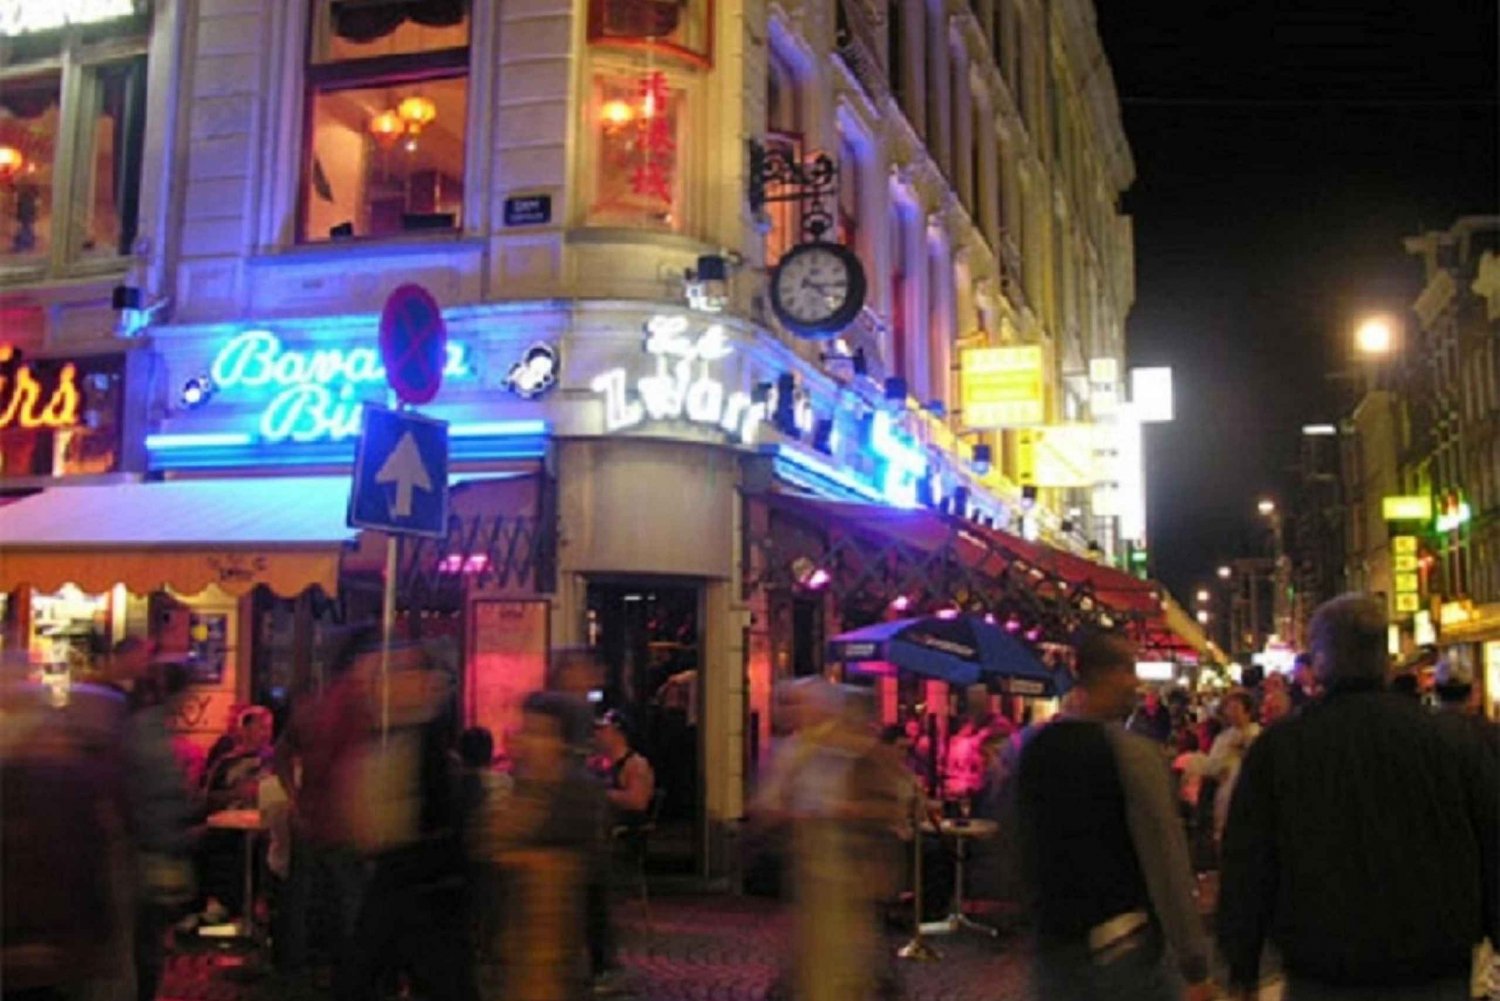 Amsterdam : Quartier rouge et visite des pubs locaux